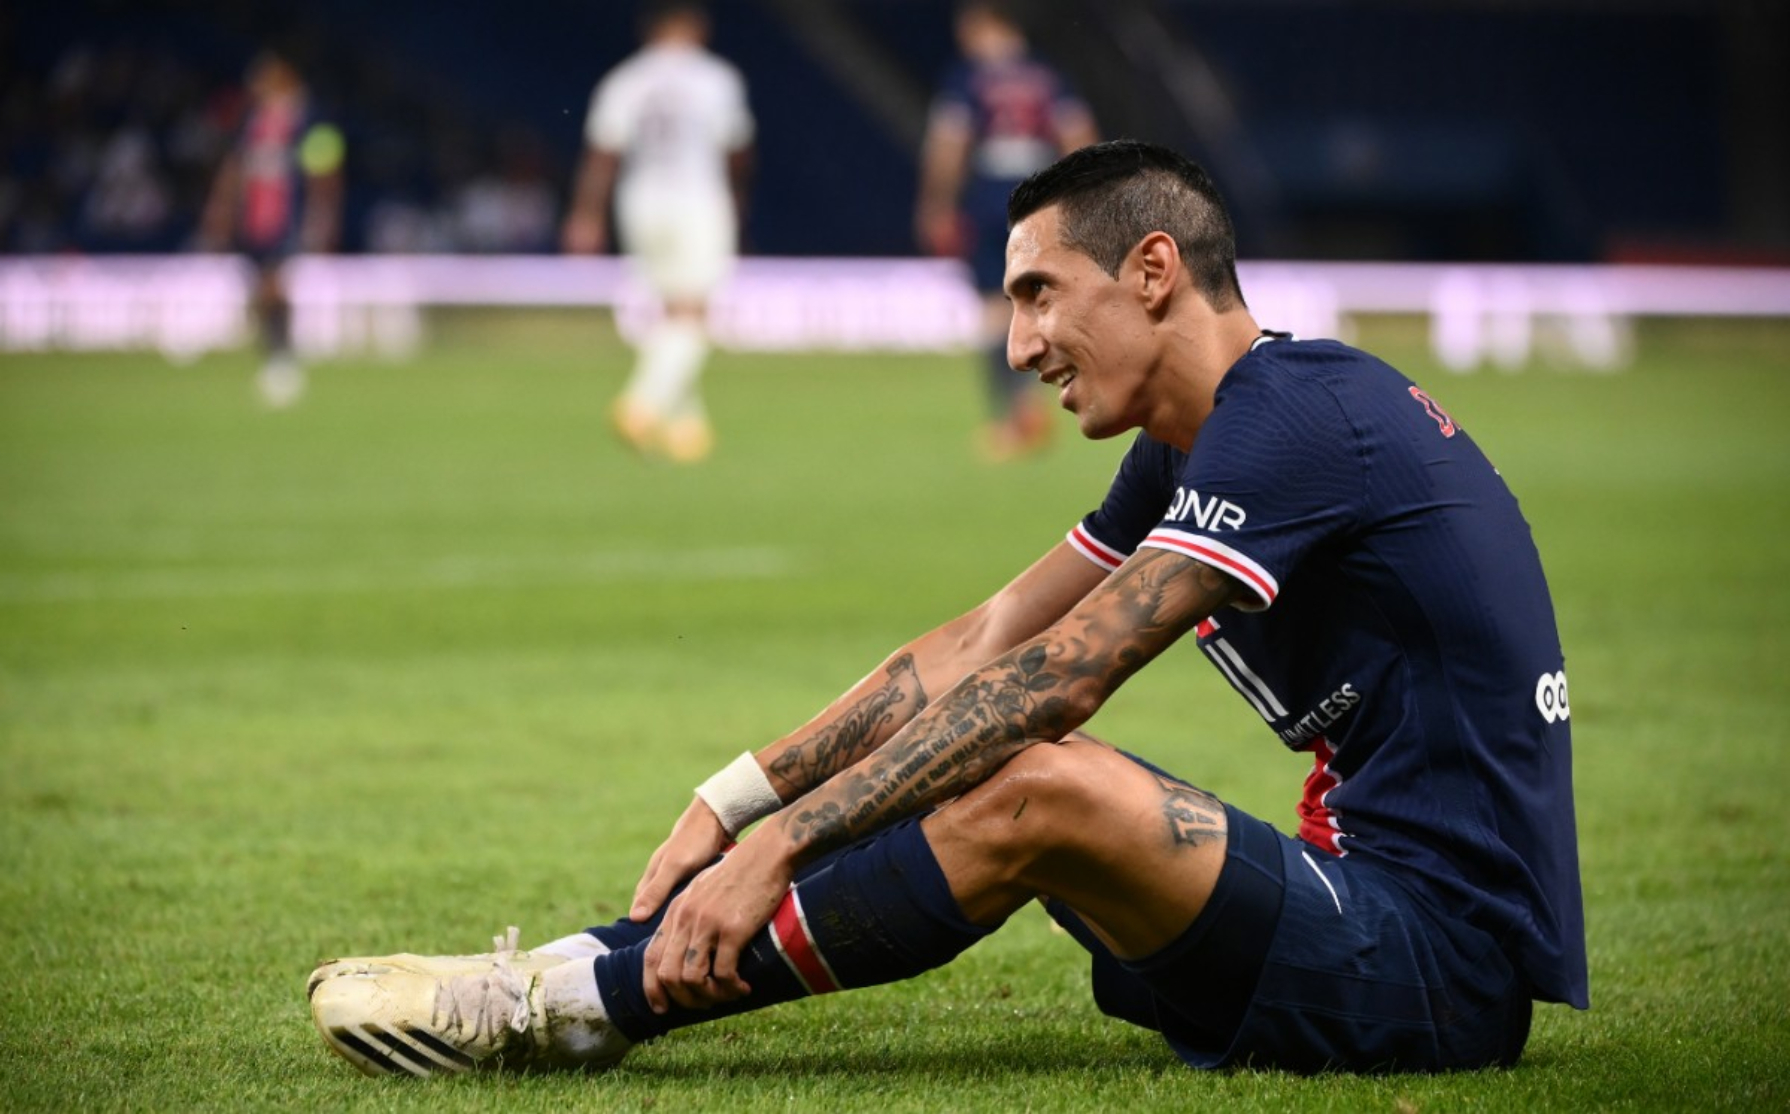 El Fideo se lesionó en el entrenamiento previo al encuentro por la Ligue 1 y será dado de baja por varias semanas.